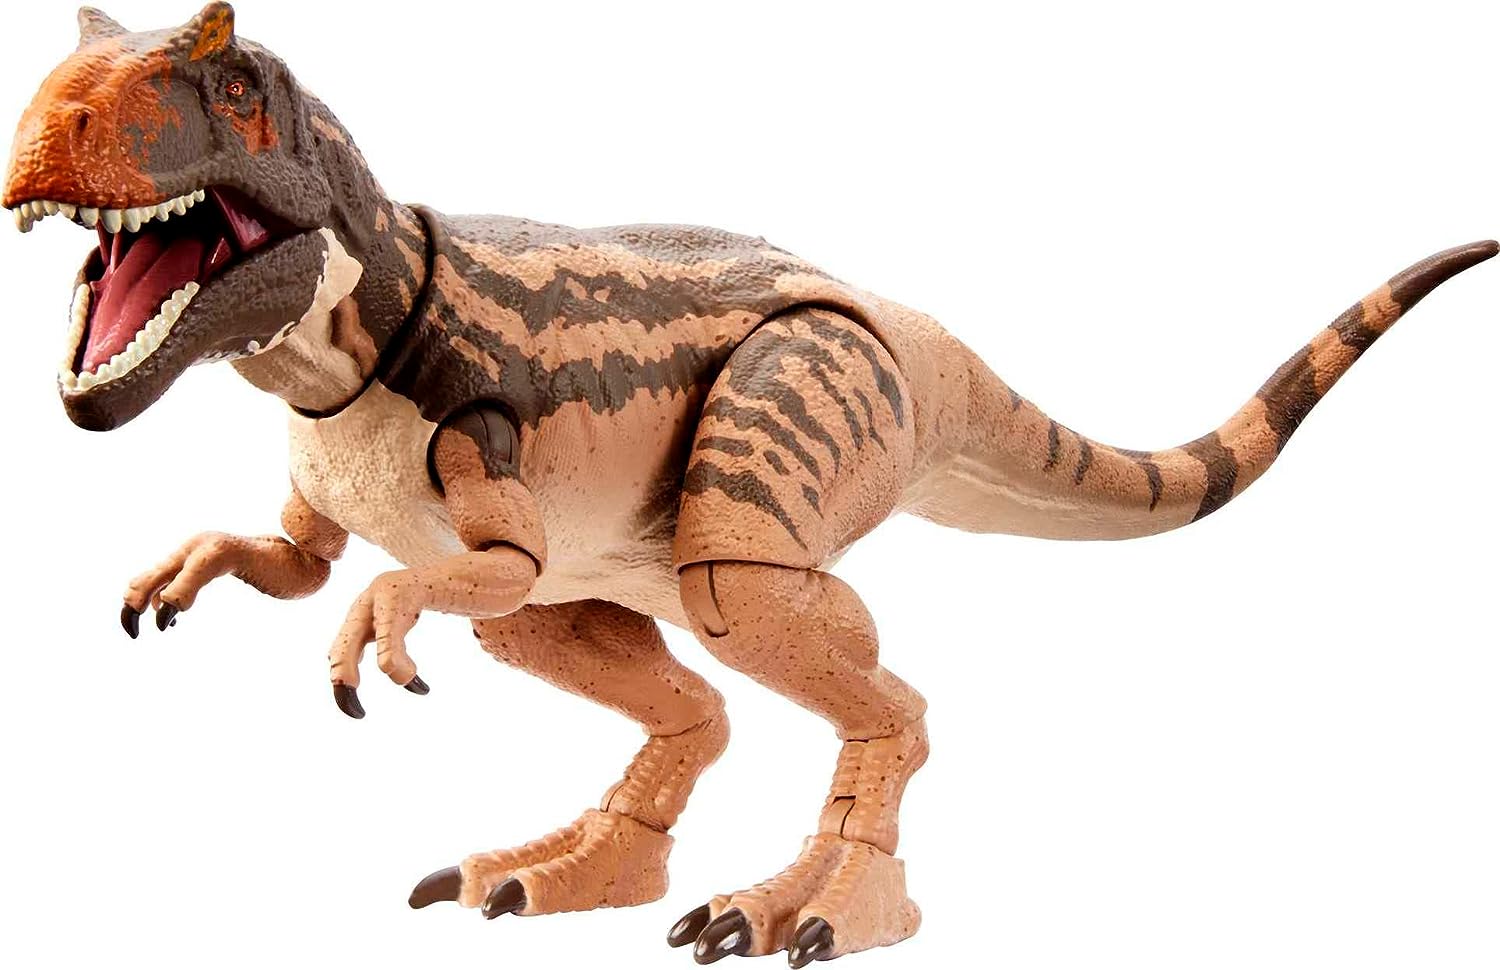 Jurassic World Lost World - Hammond Collection Metriacanthosaurus Dinosaur Action Figure